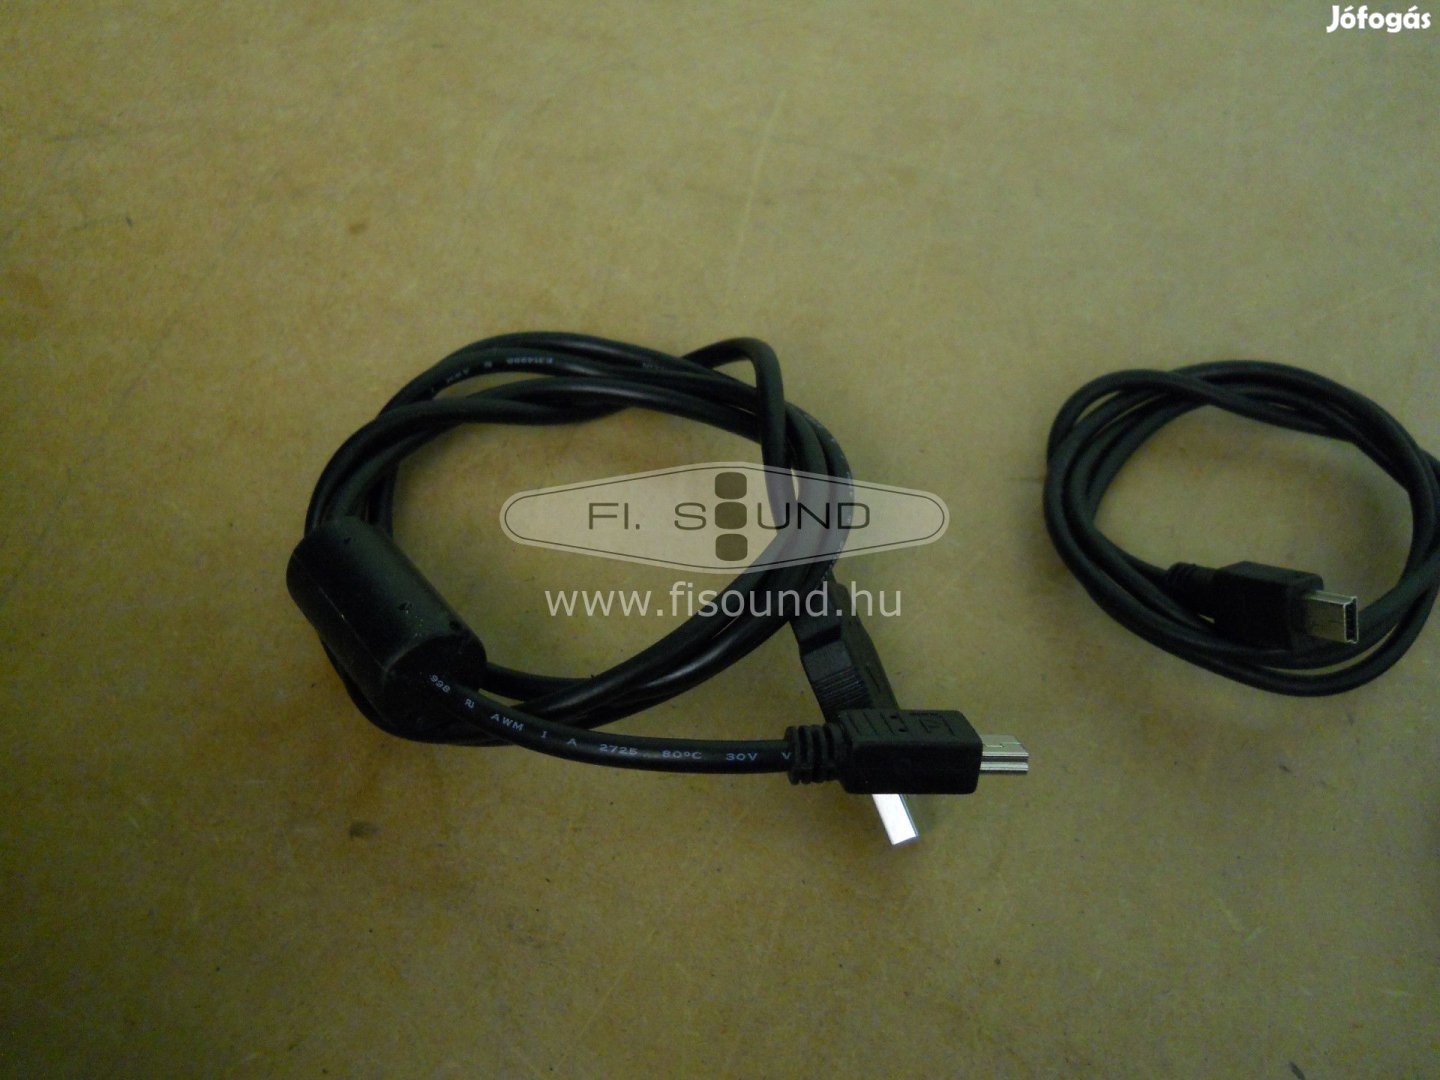 USB-mini usb átalakító kábel párban